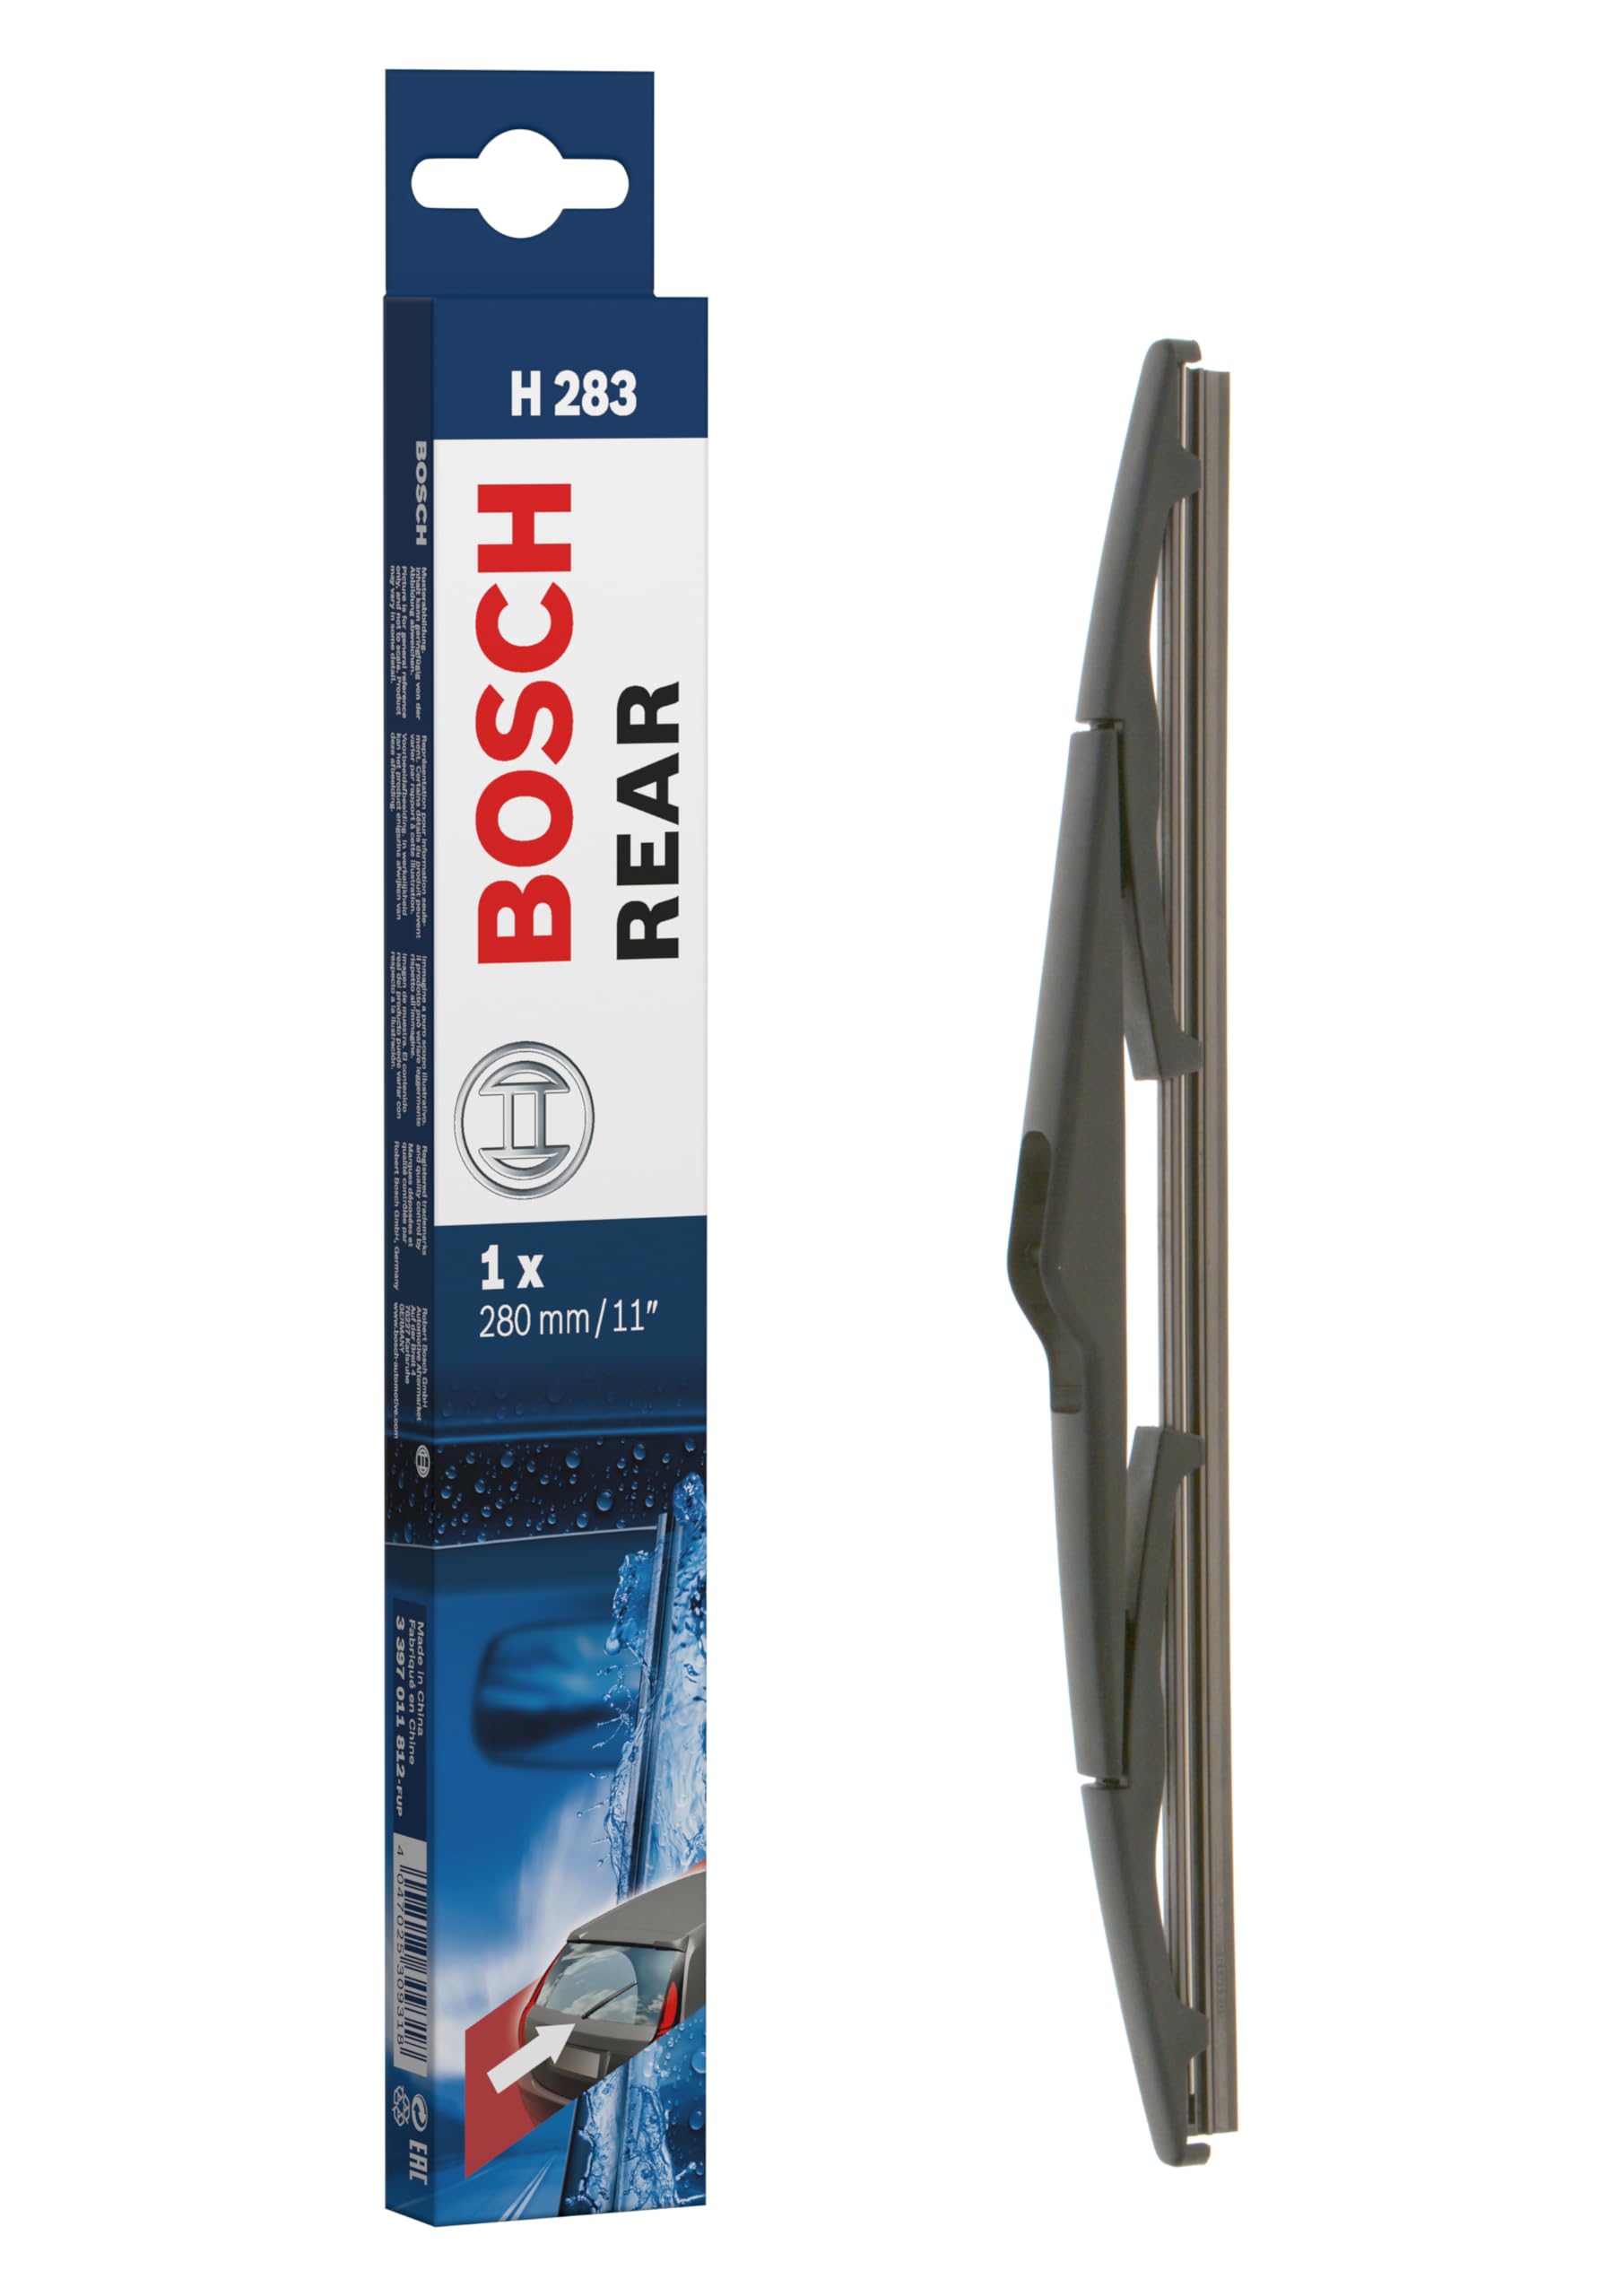 Bosch Scheibenwischer Rear H283, Länge: 280mm – Scheibenwischer für Heckscheibe von Bosch Automotive